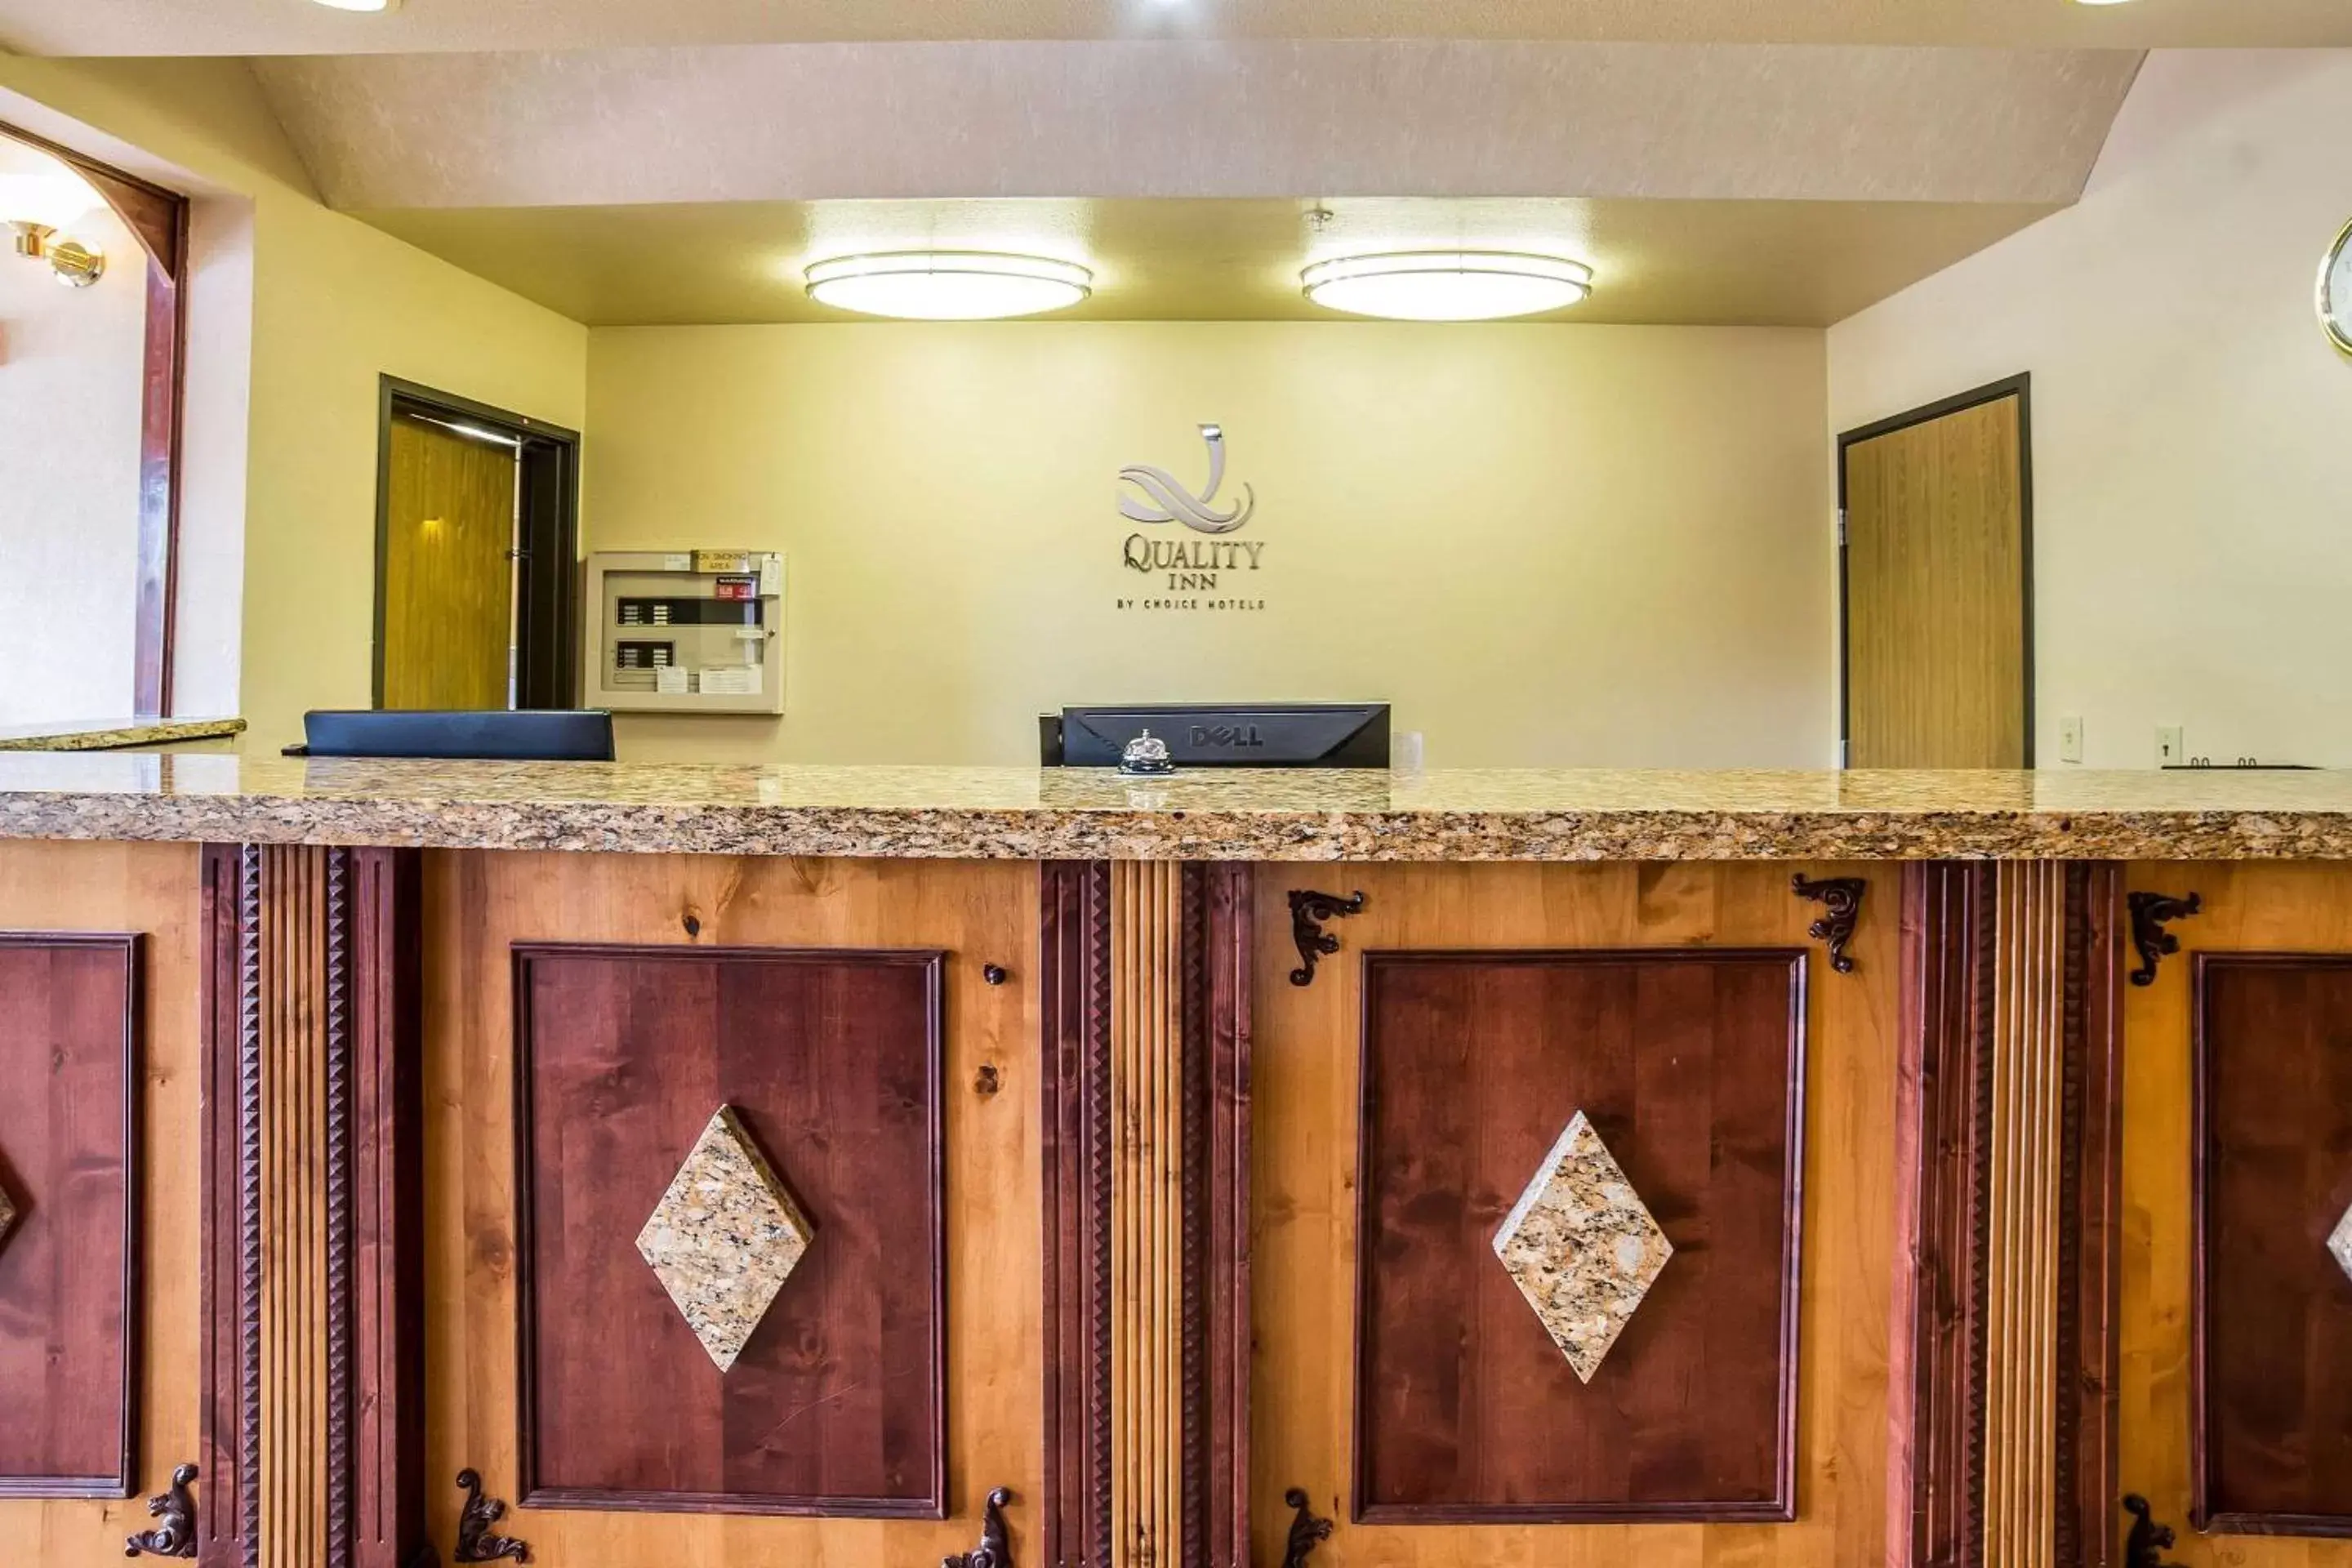 Lobby or reception, Lobby/Reception in Quality Inn Zion